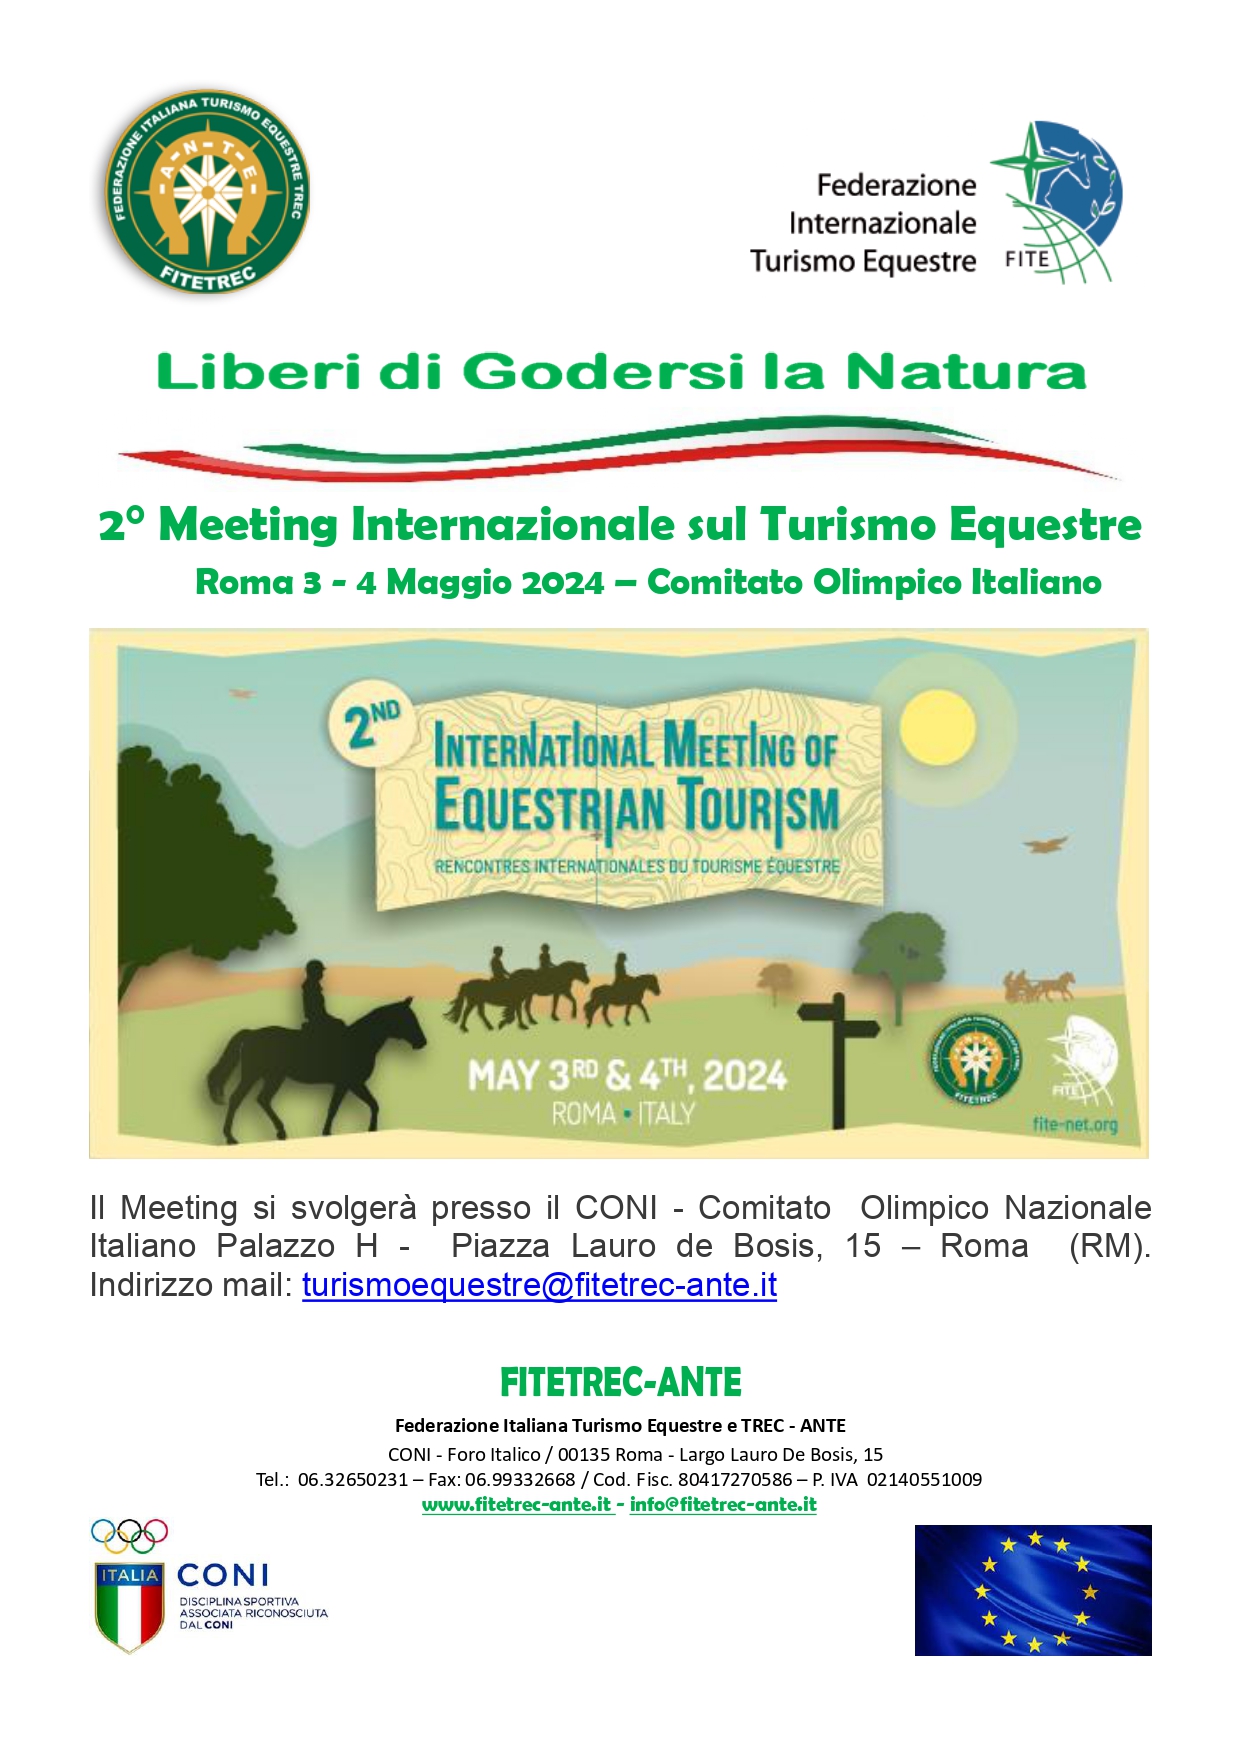 2° Meeting Internazionale sul Turismo Equestre